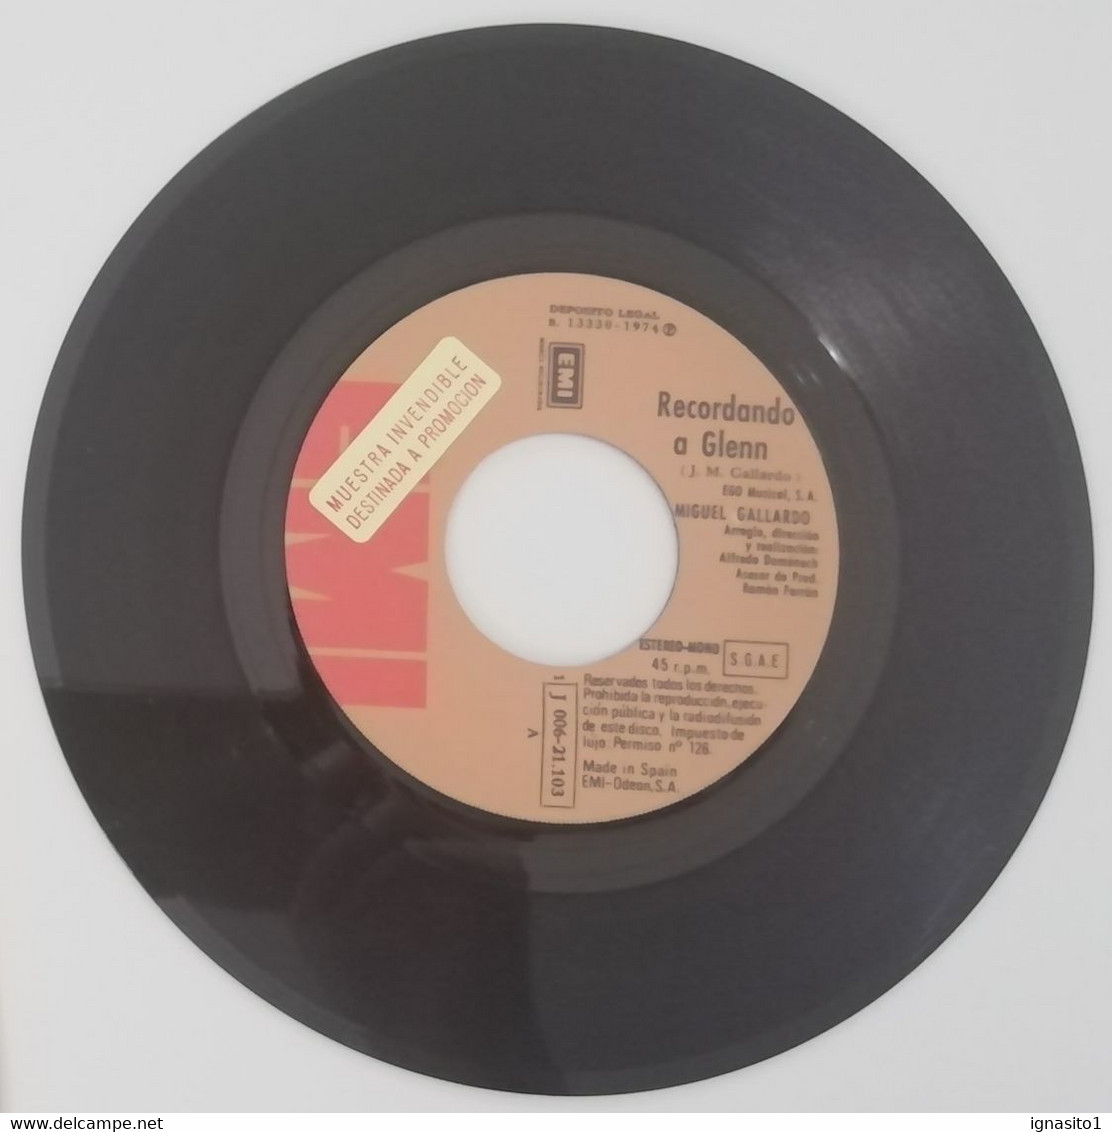 Miguel Gallardo - Recordando A Glenn / Hay Un Lugar - Disco Promocional - Año 1974 - Sonstige - Spanische Musik